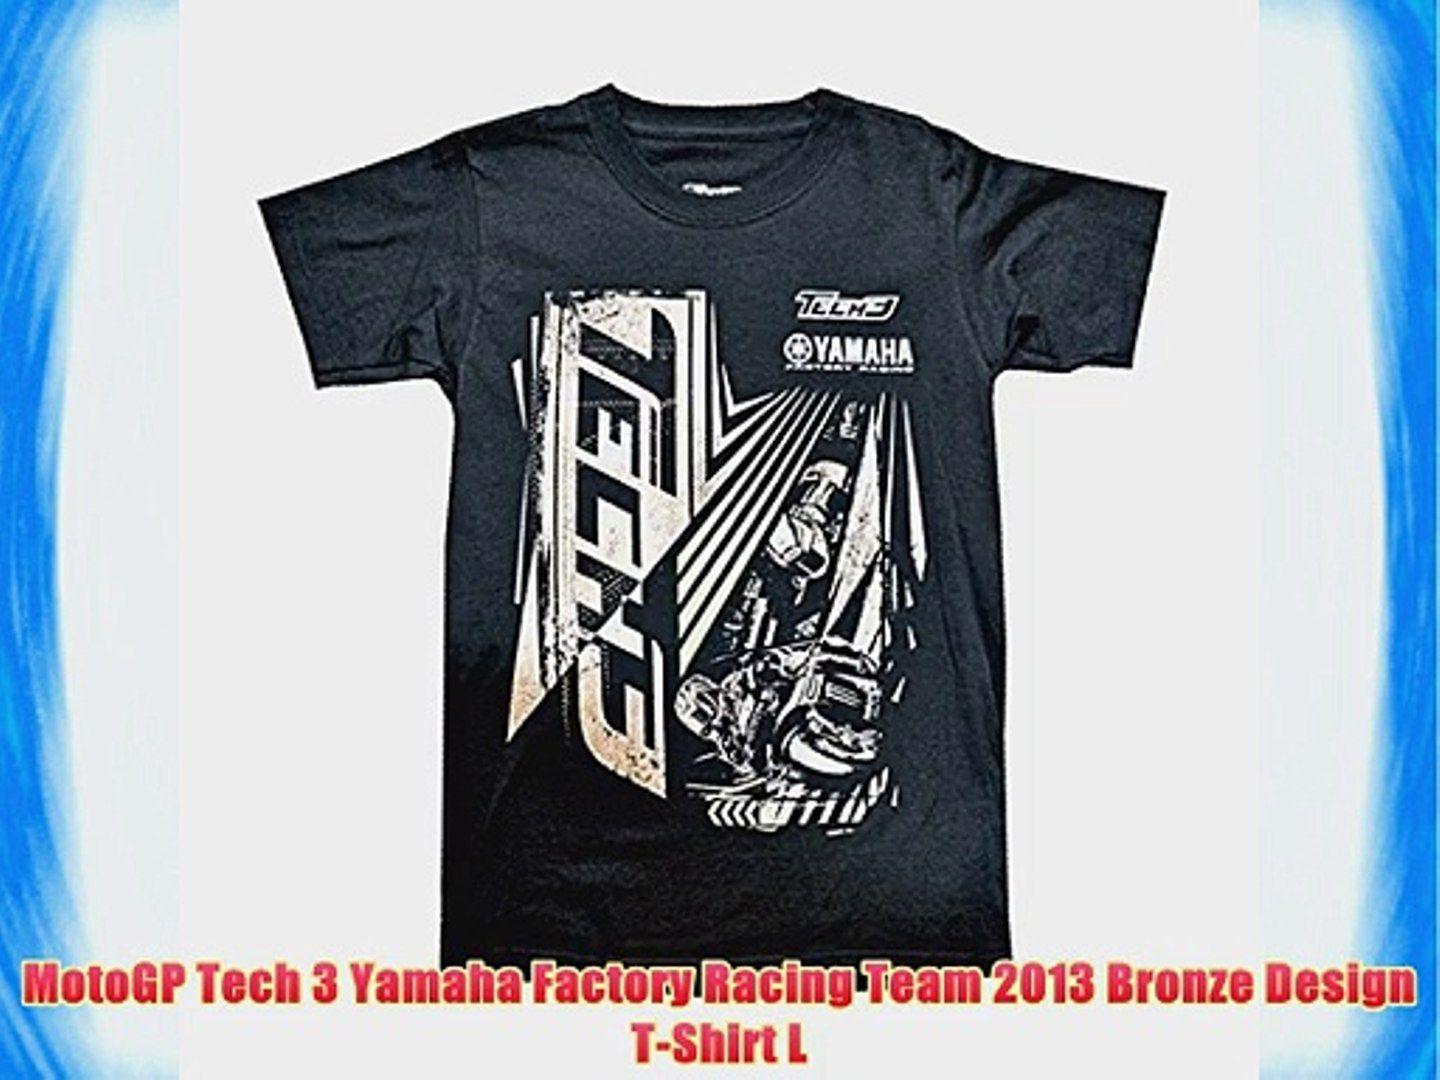 Bronze Yamaha Logo - MotoGP Tech 3 Yamaha Factory Racing Team 2013 Bronze Design T-Shirt ...